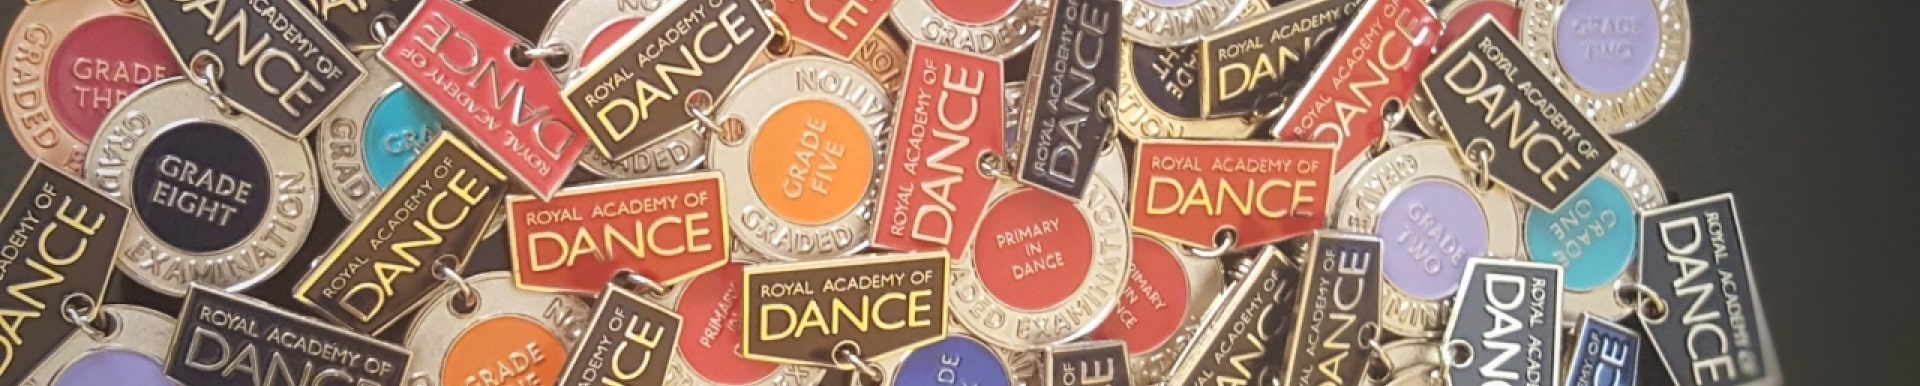 Dansa Clàssica. Medalles de la Royal Academy of Dance de Londres.